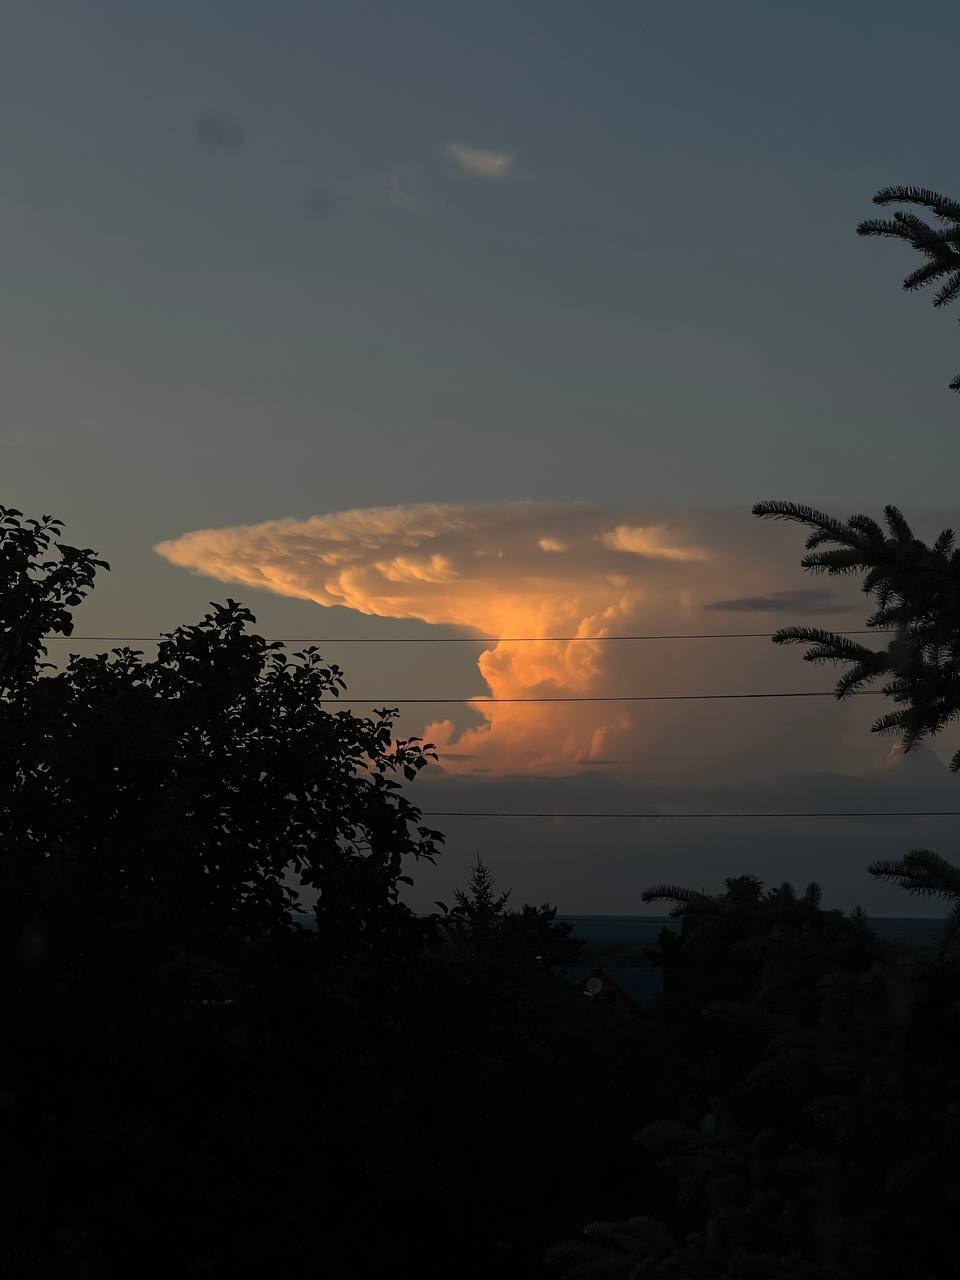 Росіян налякала хмара у вигляді ядерного гриба: явище спостерігали в небі над Казанню. Фото і відео 